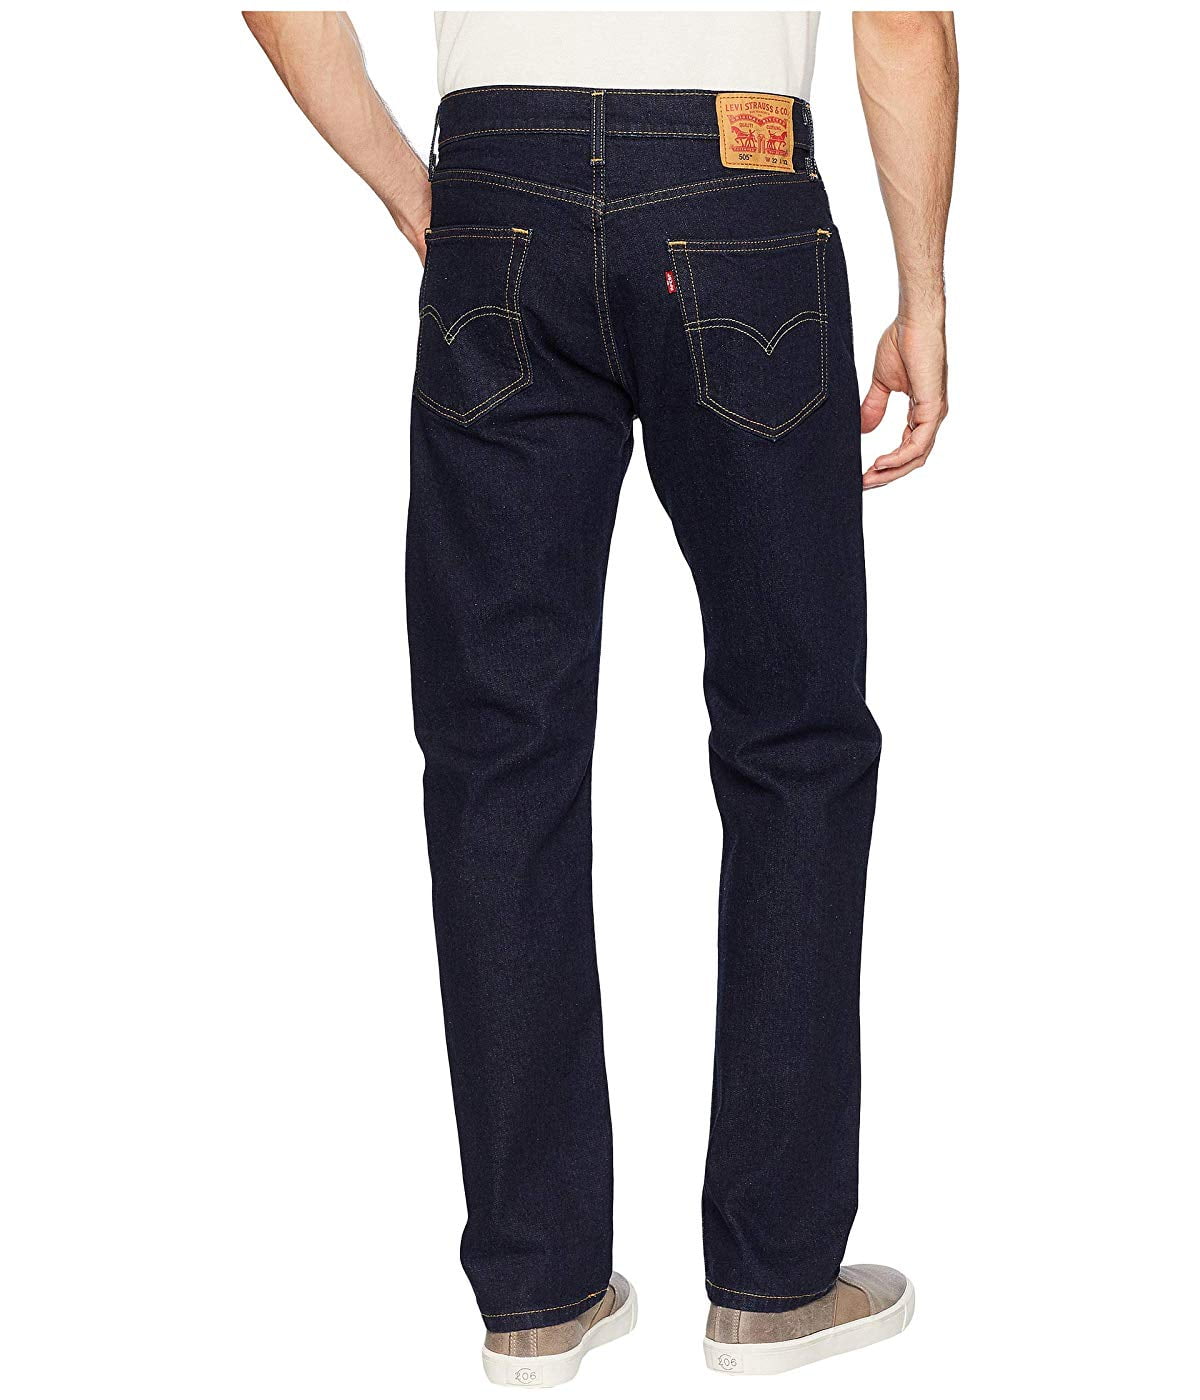 Køb Udelade indstudering Levis Men's 505 Regular Fit Jeans - Walmart.com